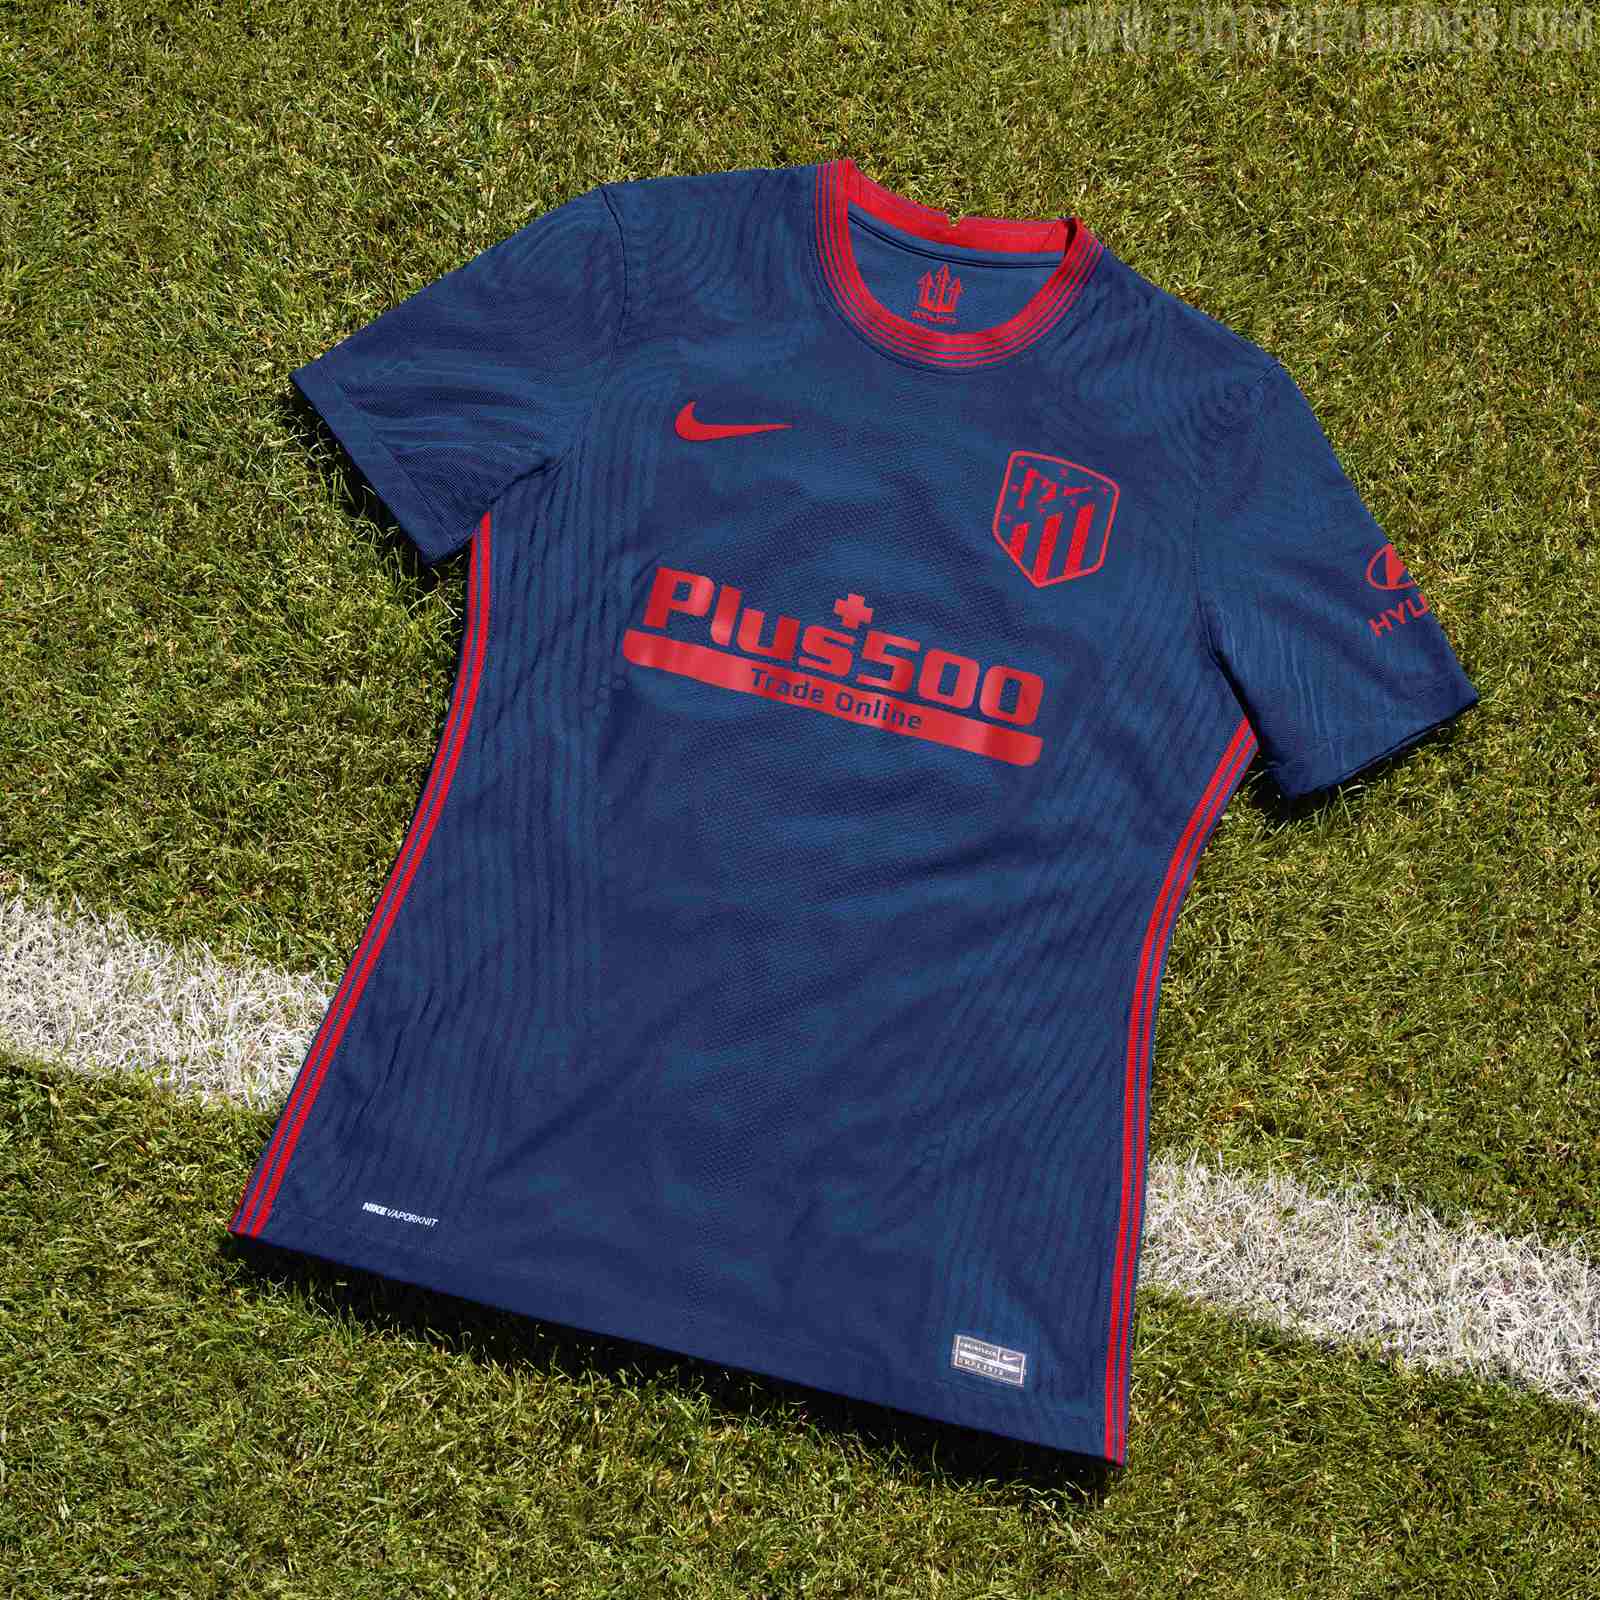 FC Barcelona 20-21 Away Kit Released - Footy Headlines